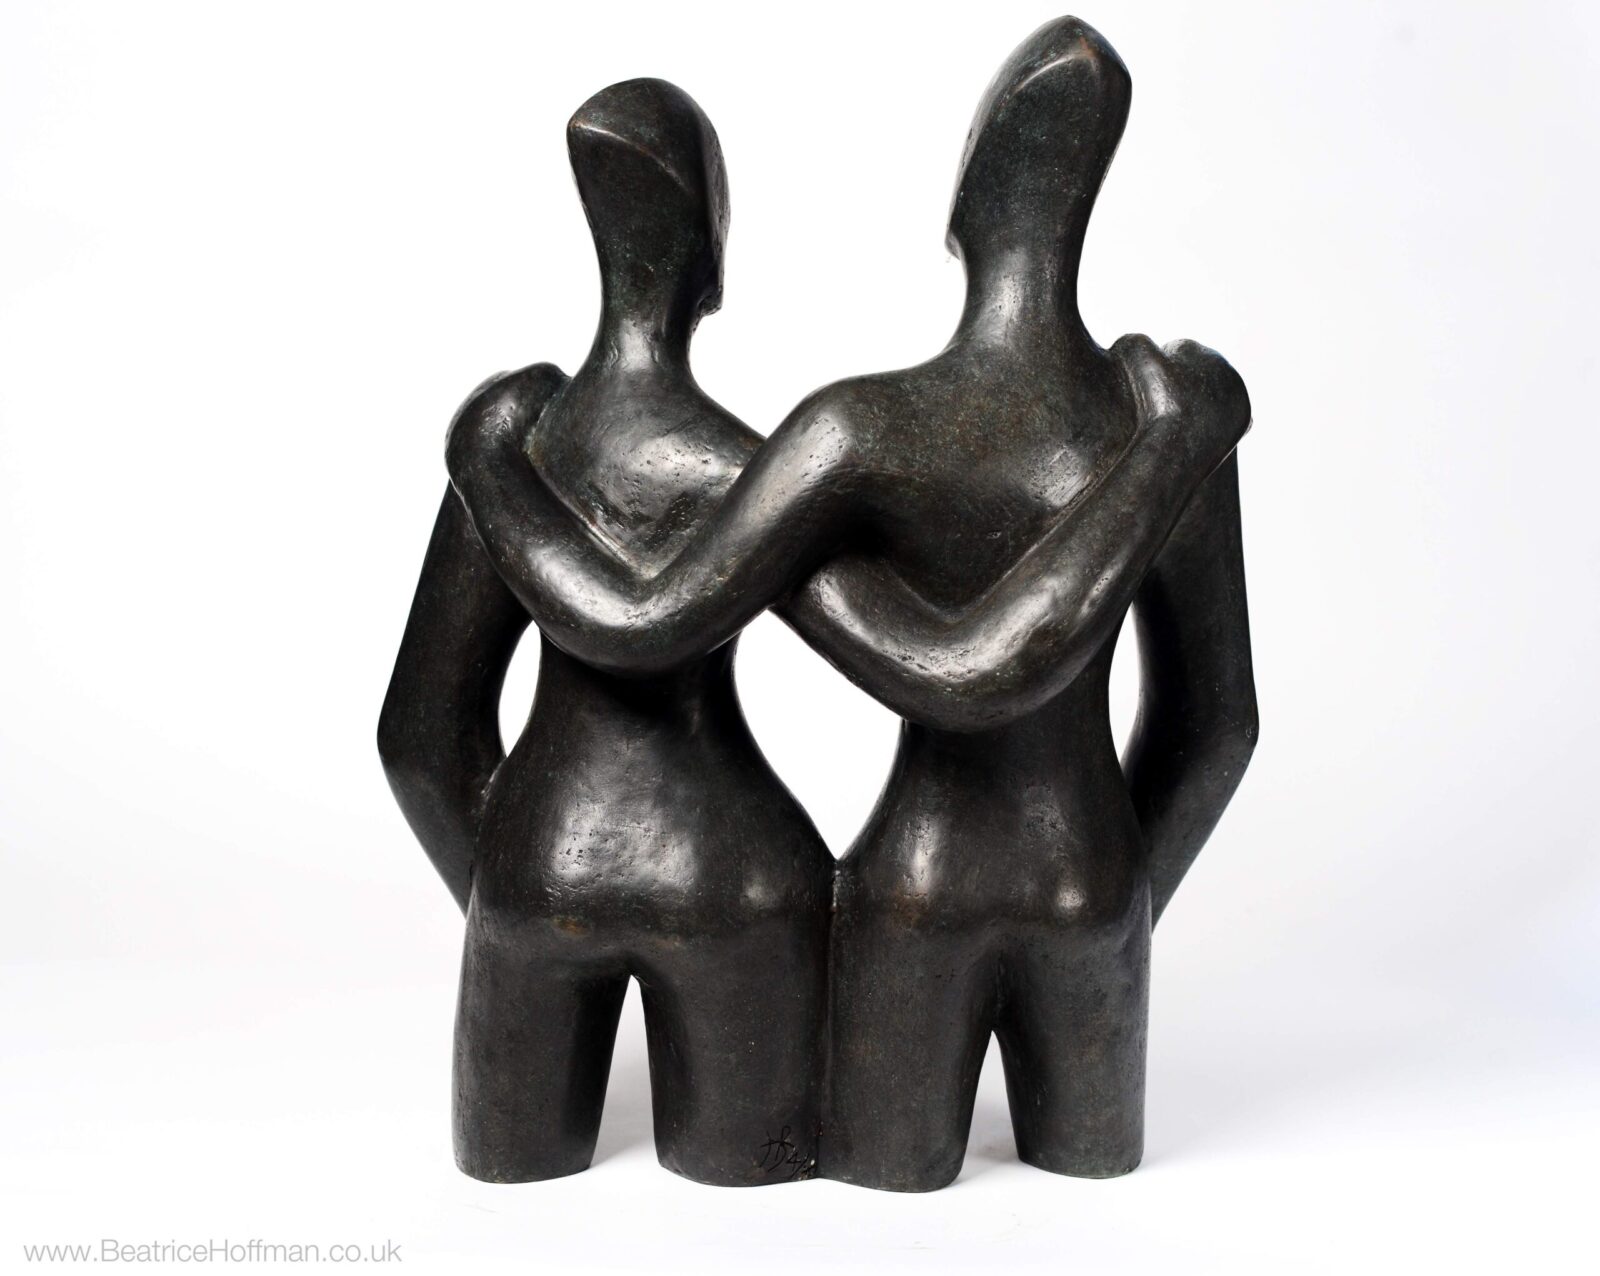 contemporary bronze sculpture of a couple suitable for the garden or a wedding present